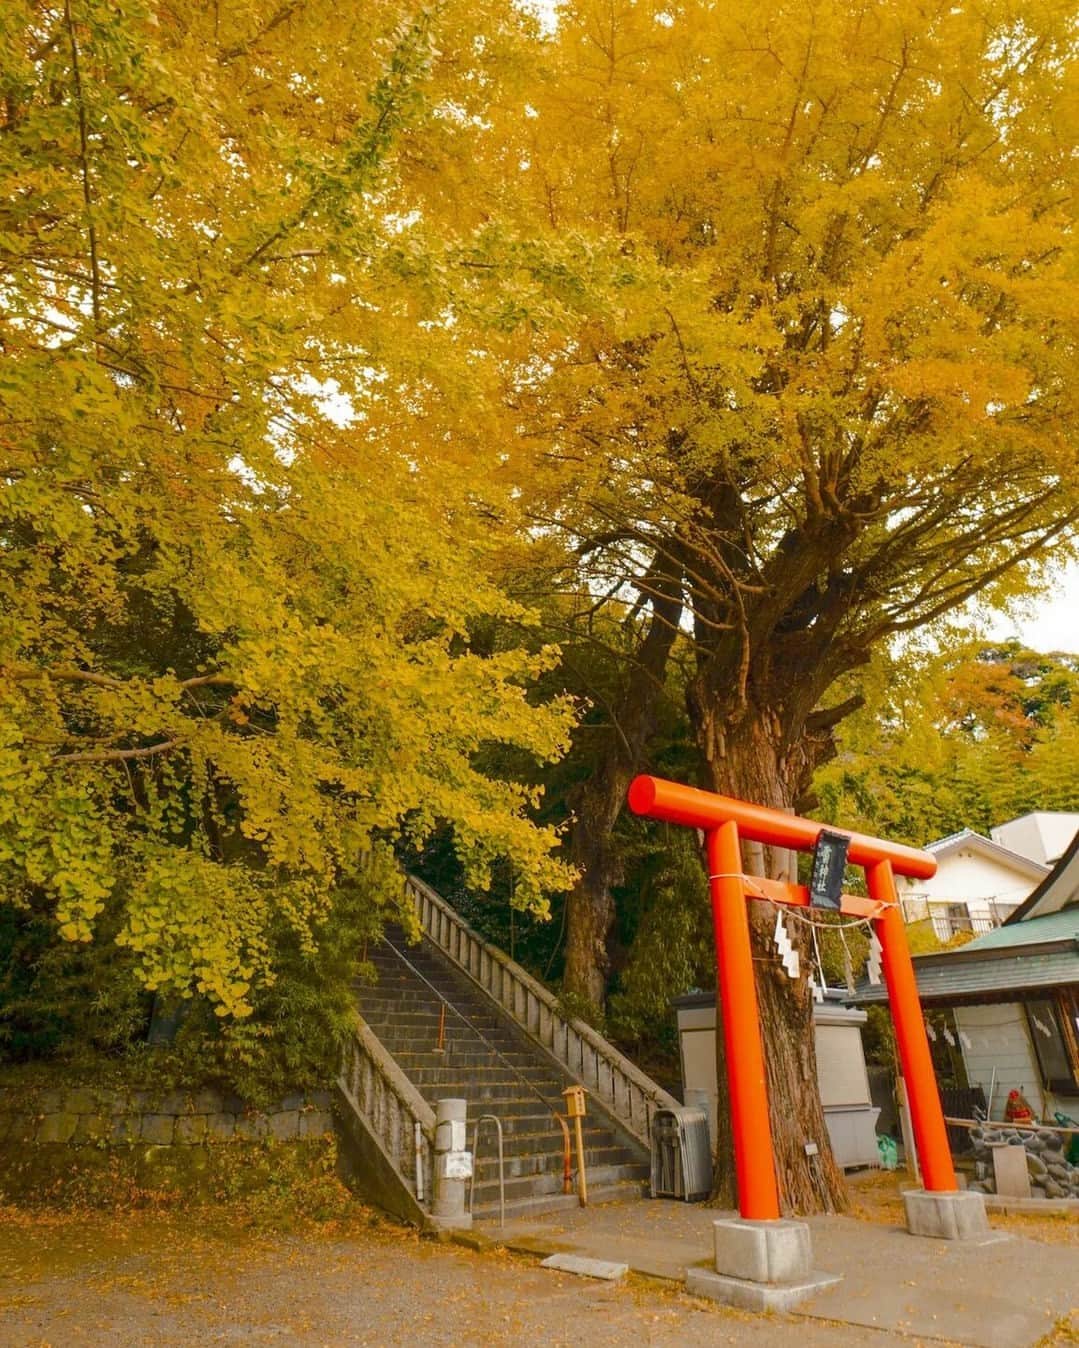 東京カメラ部公式のインスタグラム：「横須賀市観光情報サイト公式Instagramアカウント「yokosuka travel（ @yokosuka.travel ）」運営中！ . 横須賀市観光情報サイト公式Instagramアカウントでは、「 #ここはヨコスカ 」をつけてInstagramに投稿された横須賀市内で撮影された素敵な写真を紹介中。 . 横須賀に行った方や行ってみたい方、カメラや写真がお好きな方は、どなたでも大歓迎です。ぜひご参加ください！<PR> . ※作品： @umi.yokoch さん . ※各種法令、マナー、関係者の指示に従った撮影をお願いします。 *Please ensure that your photography adheres to all relevant laws, etiquette, and instructions issued by authorized persons. ※本アカウントは東京カメラ部がFacebook、Instagramのサービスを利用して運営しているもので、Meta社・Instagramとは一切関係ありません。 . 【ご注意ください】 東京カメラ部を名乗るなりすましアカウントが確認されています。また、そうしたアカウントから皆様にDMが送られ、クレジットカードなどの登録を要求しているケースがあるようです。 東京カメラ部Instagramアカウントは、東京カメラ部がFacebook、Instagramのサービスを利用して無償でサービスを提供しているものです。東京カメラ部を利用（投稿、閲覧）のために費用をいただくことはありません。 不審なDMを受け取った場合、記載されているURLなどはクリックせず、DMの削除などをお願いいたします。 東京カメラ部に関連するアカウントは東京カメラ部（ @tokyocameraclub ）がフォローしているアカウントのみとなります。（tuchong_opensee除く） . Follow: @yokosuka.travel」